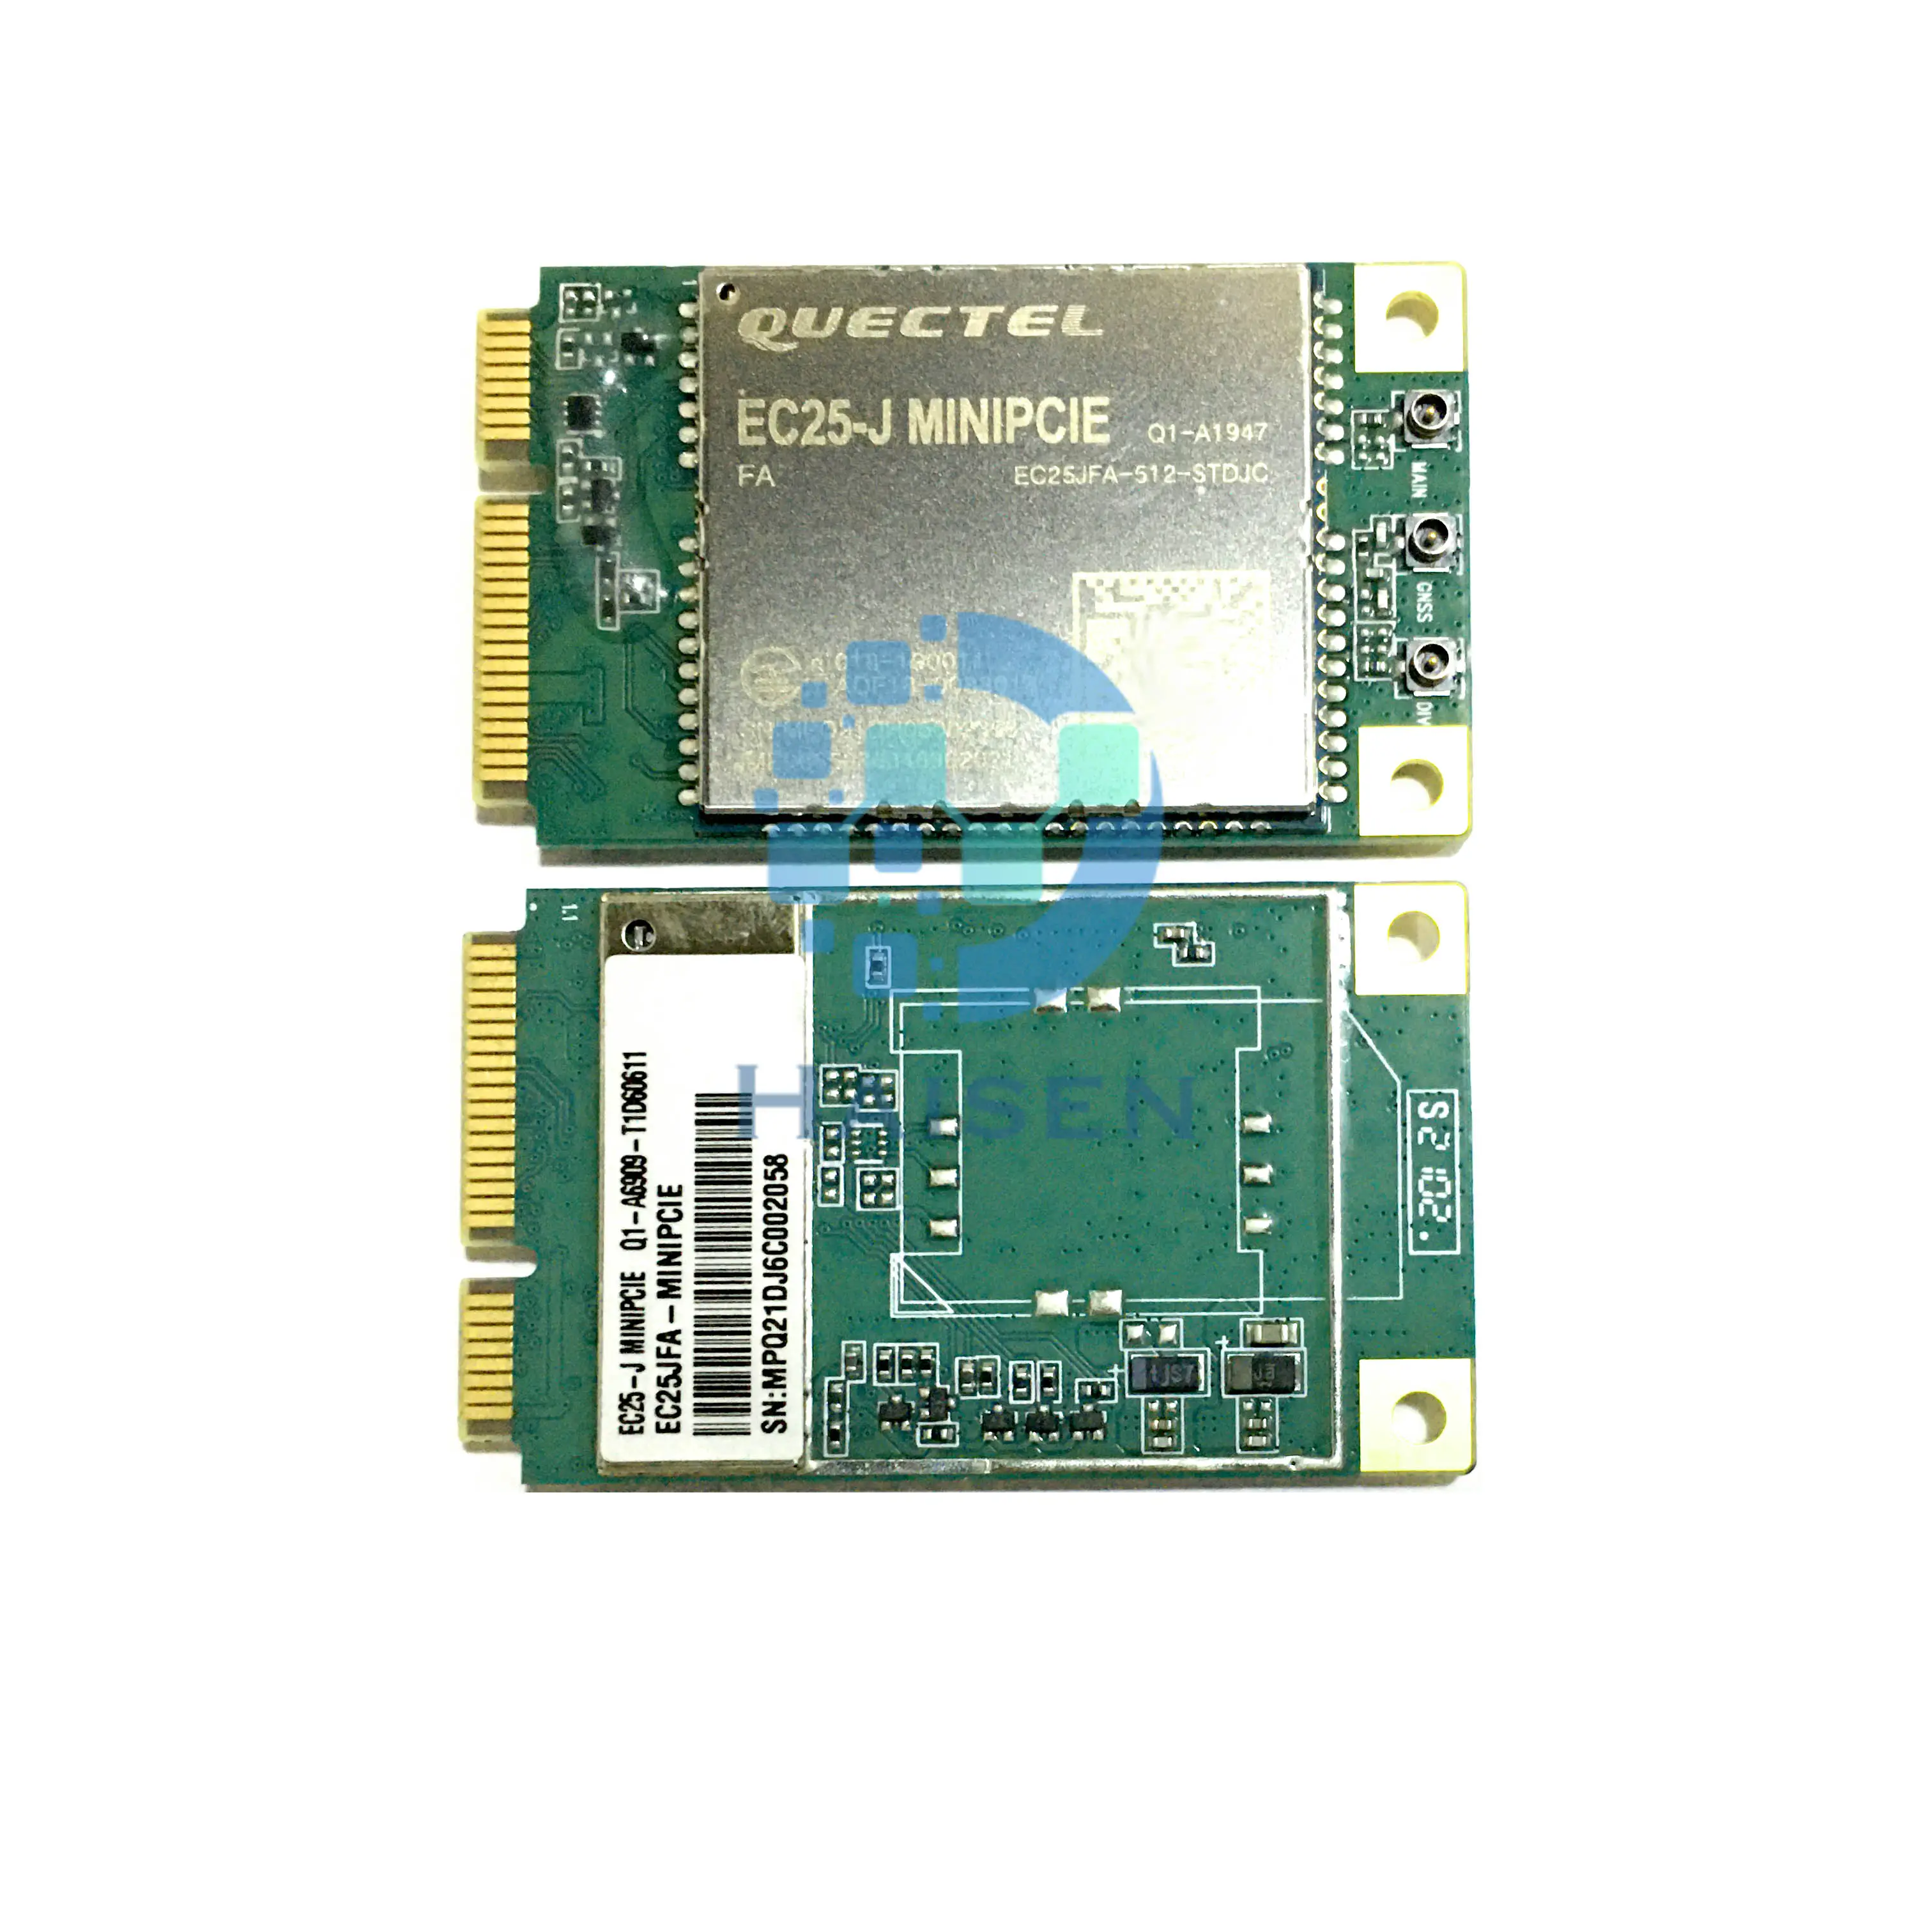 HAISEN QUECTEL 4G LTE Cat4-Modul EC25JFA-512-STD MINIPCIE EC25-J mini PCIE EC25JFA-MINIPCIE M2M und IoT-Anwendung für Japan